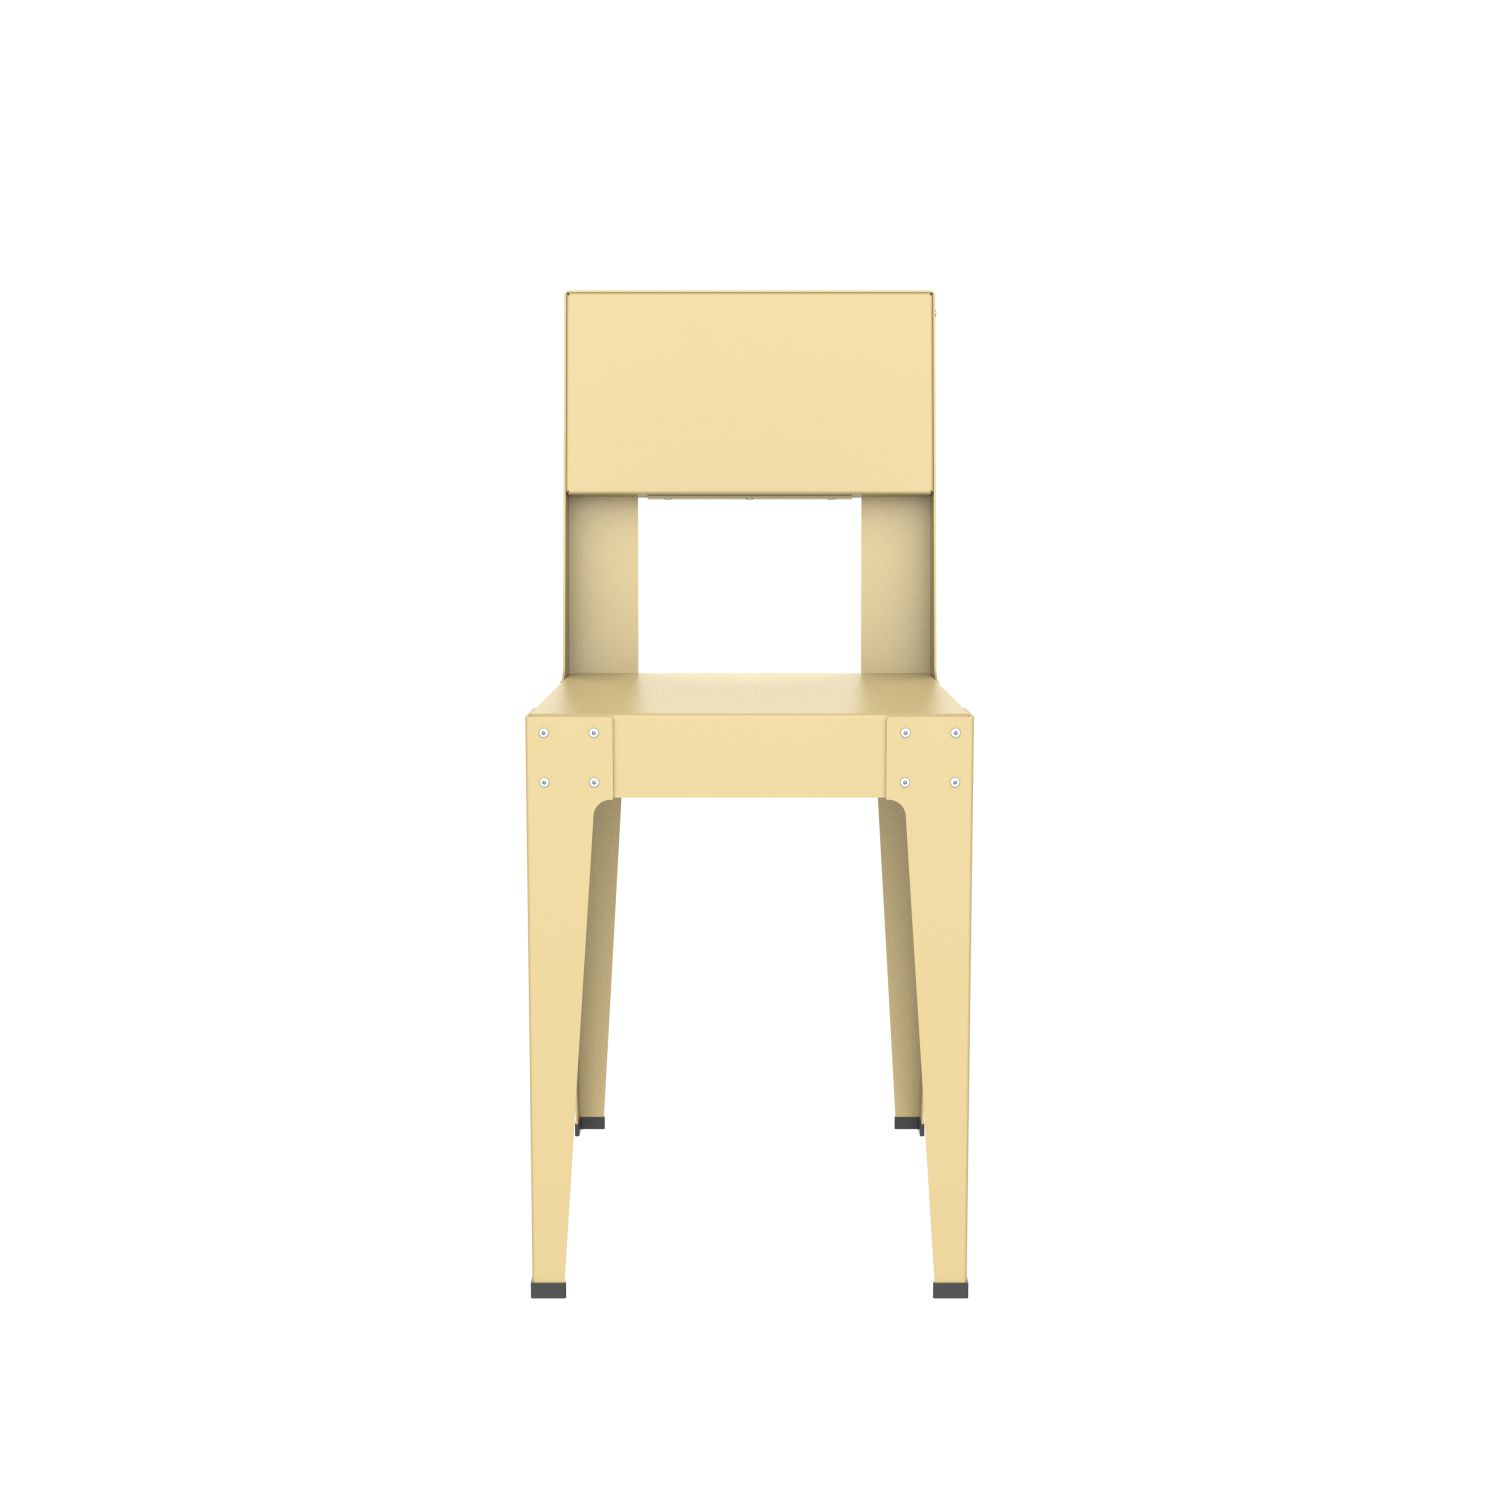 lensvelt piet hein eek aluminium series chair green beige ral1000 soft leg ends